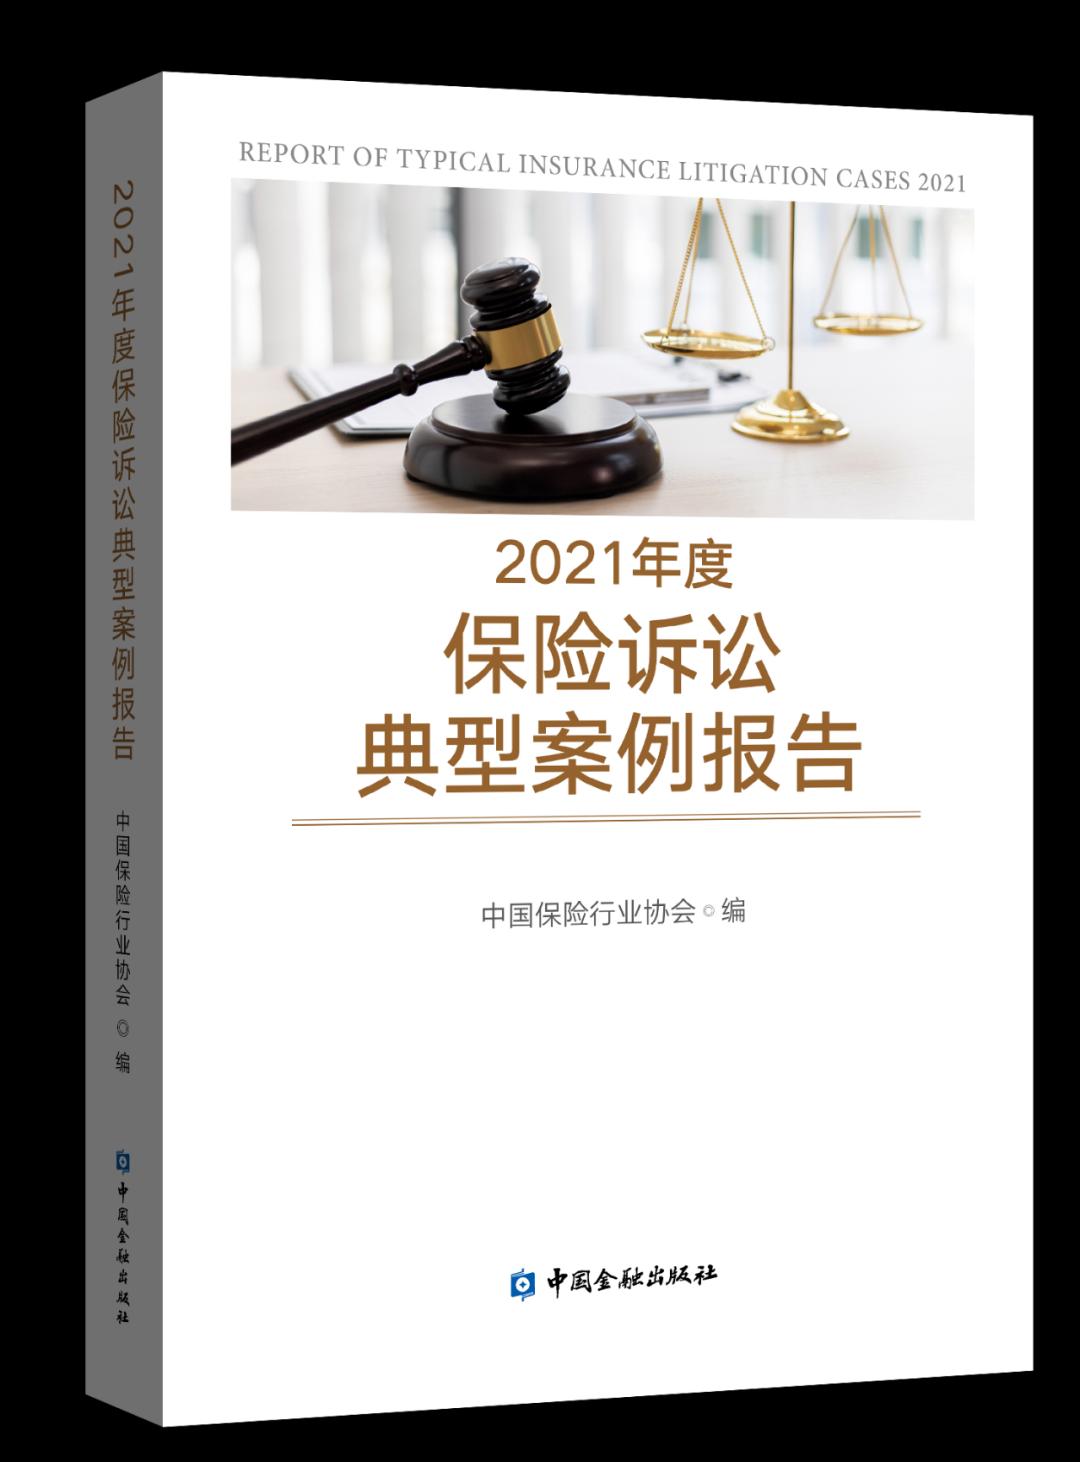 中国保险行业协会编撰出版《2021年度保险诉讼典型案例报告》